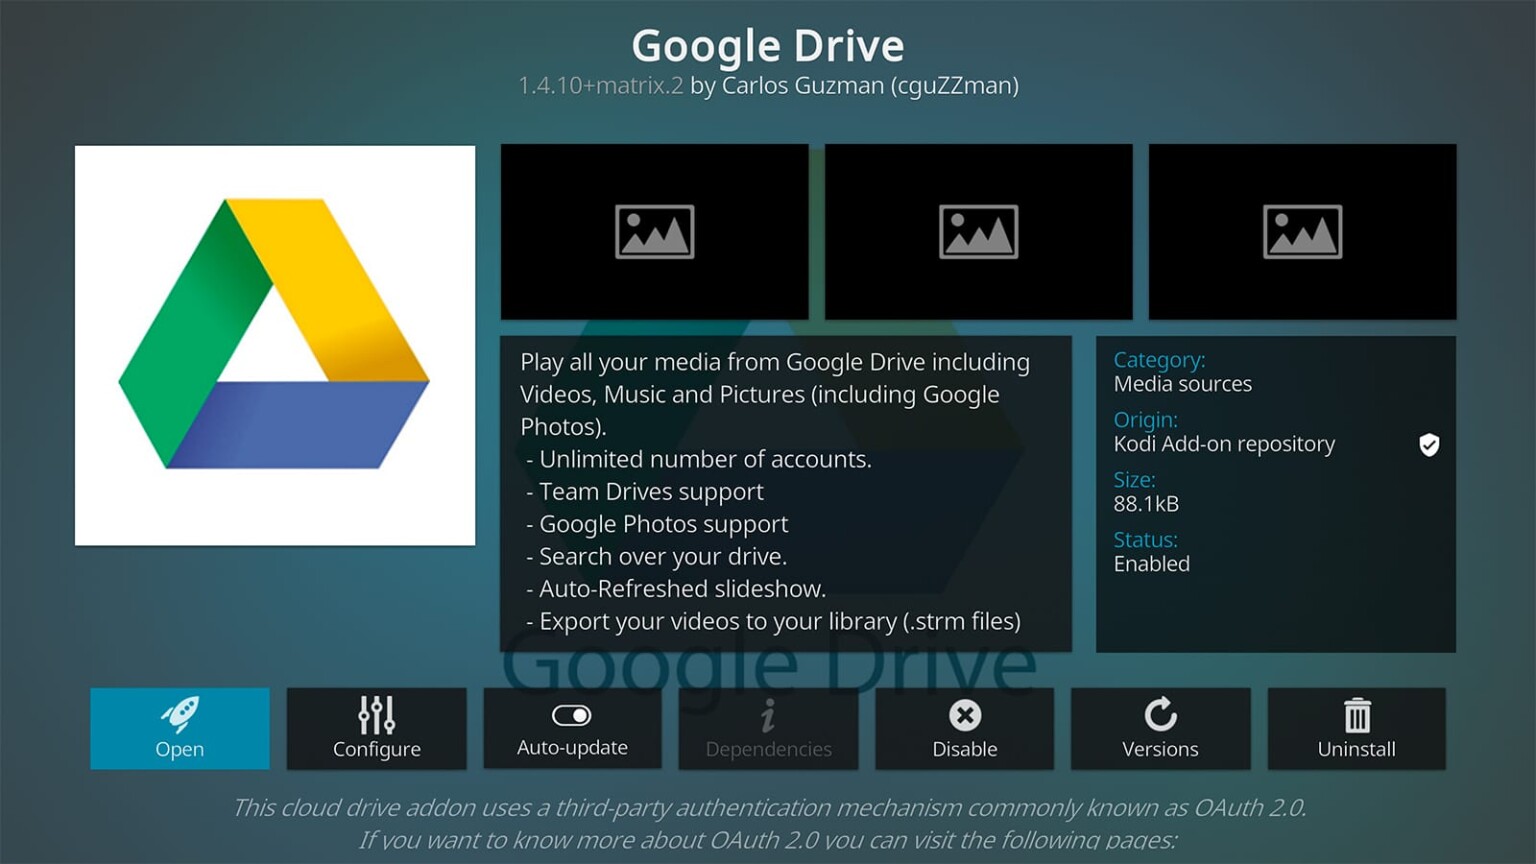 google drive stream files vs mirror files